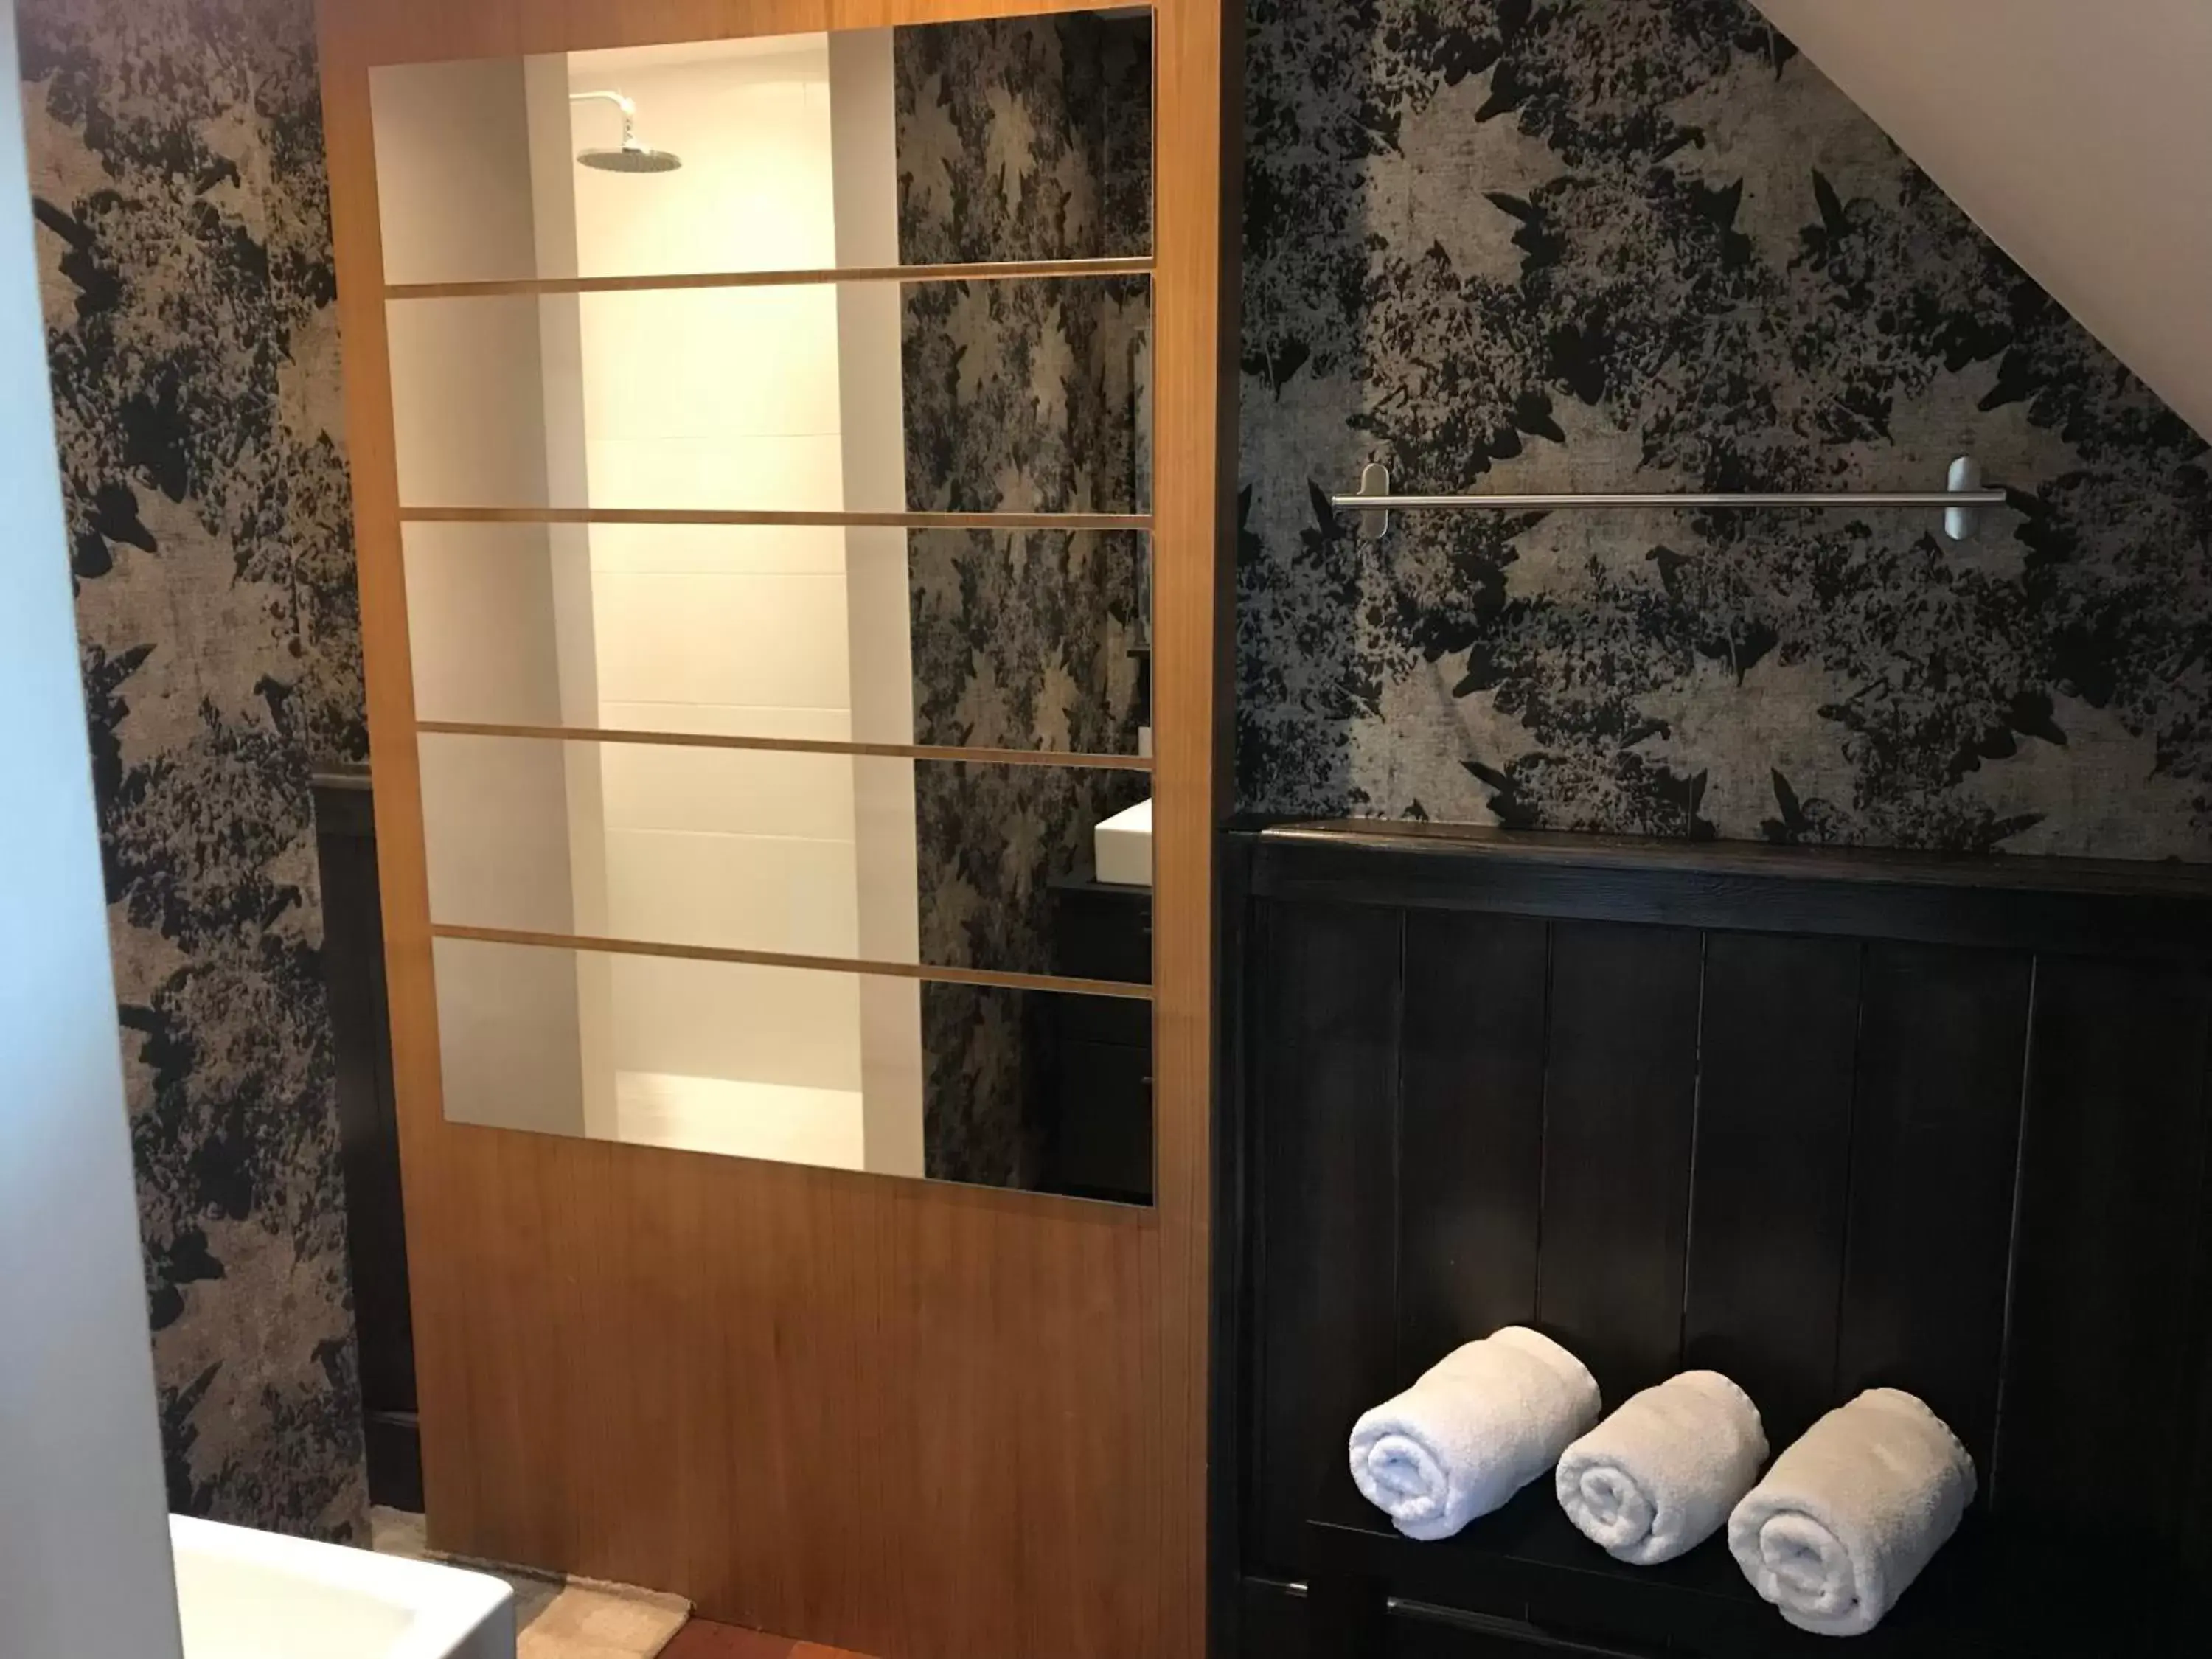 Bathroom in Hotel Buenos